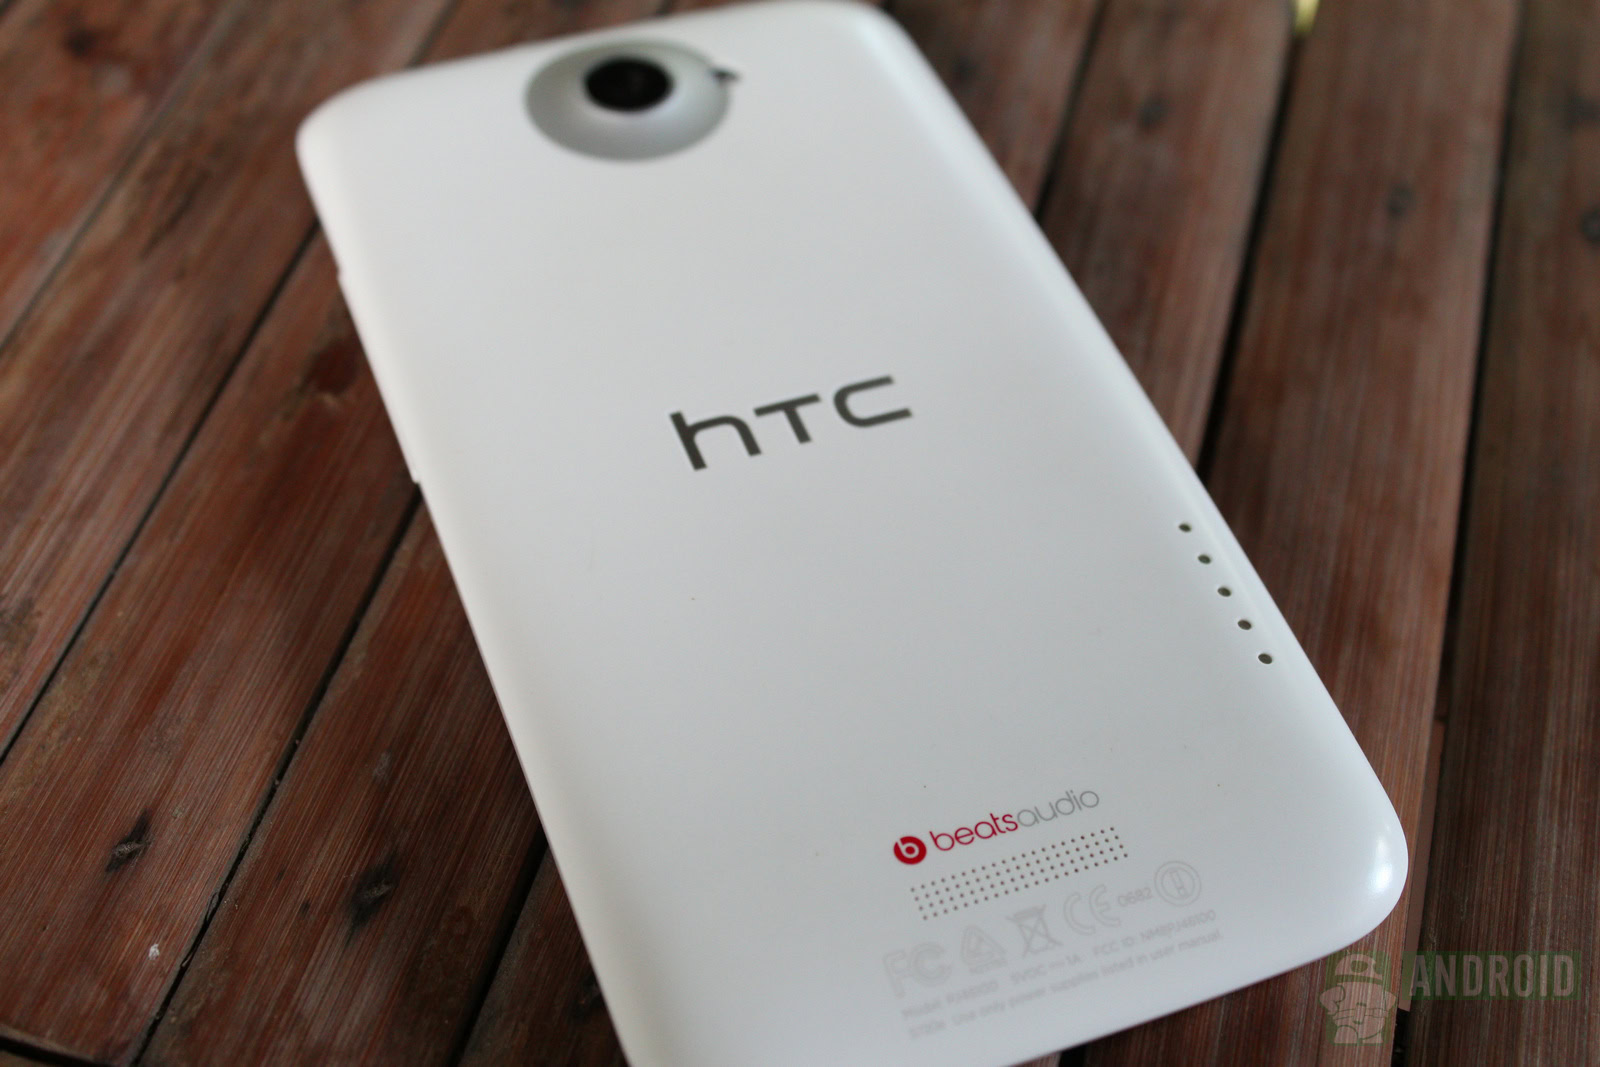 HTC One logo